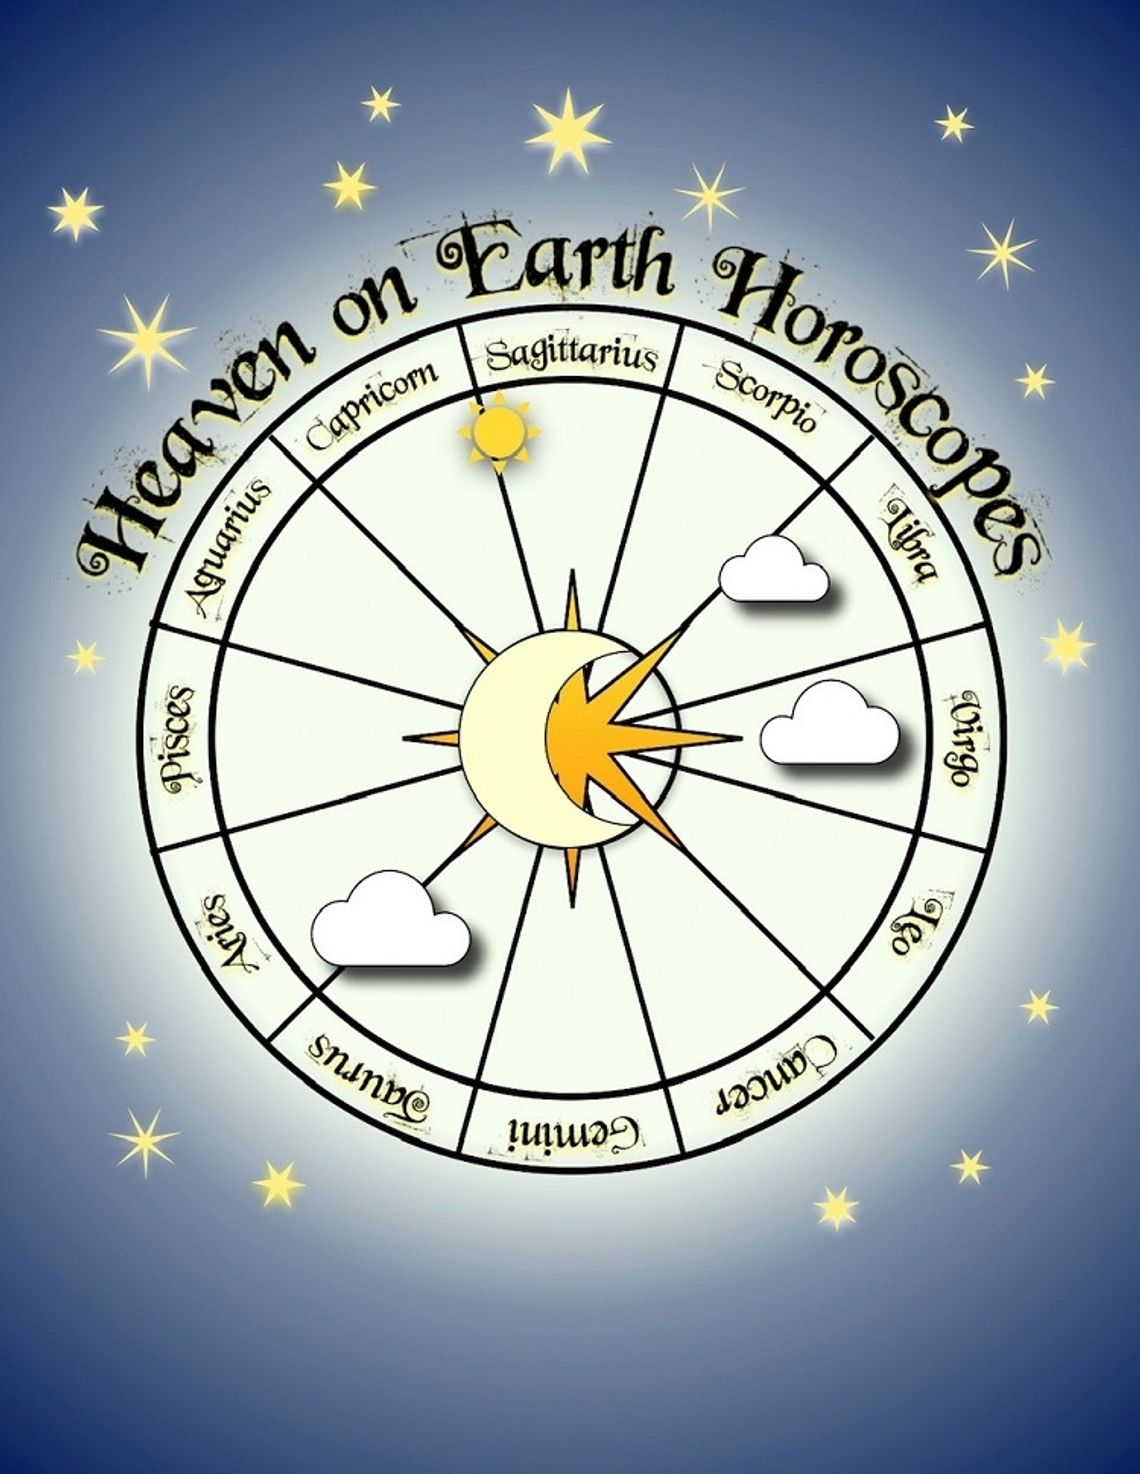 Heaven on Earth Horoscopes: December 16 - 22